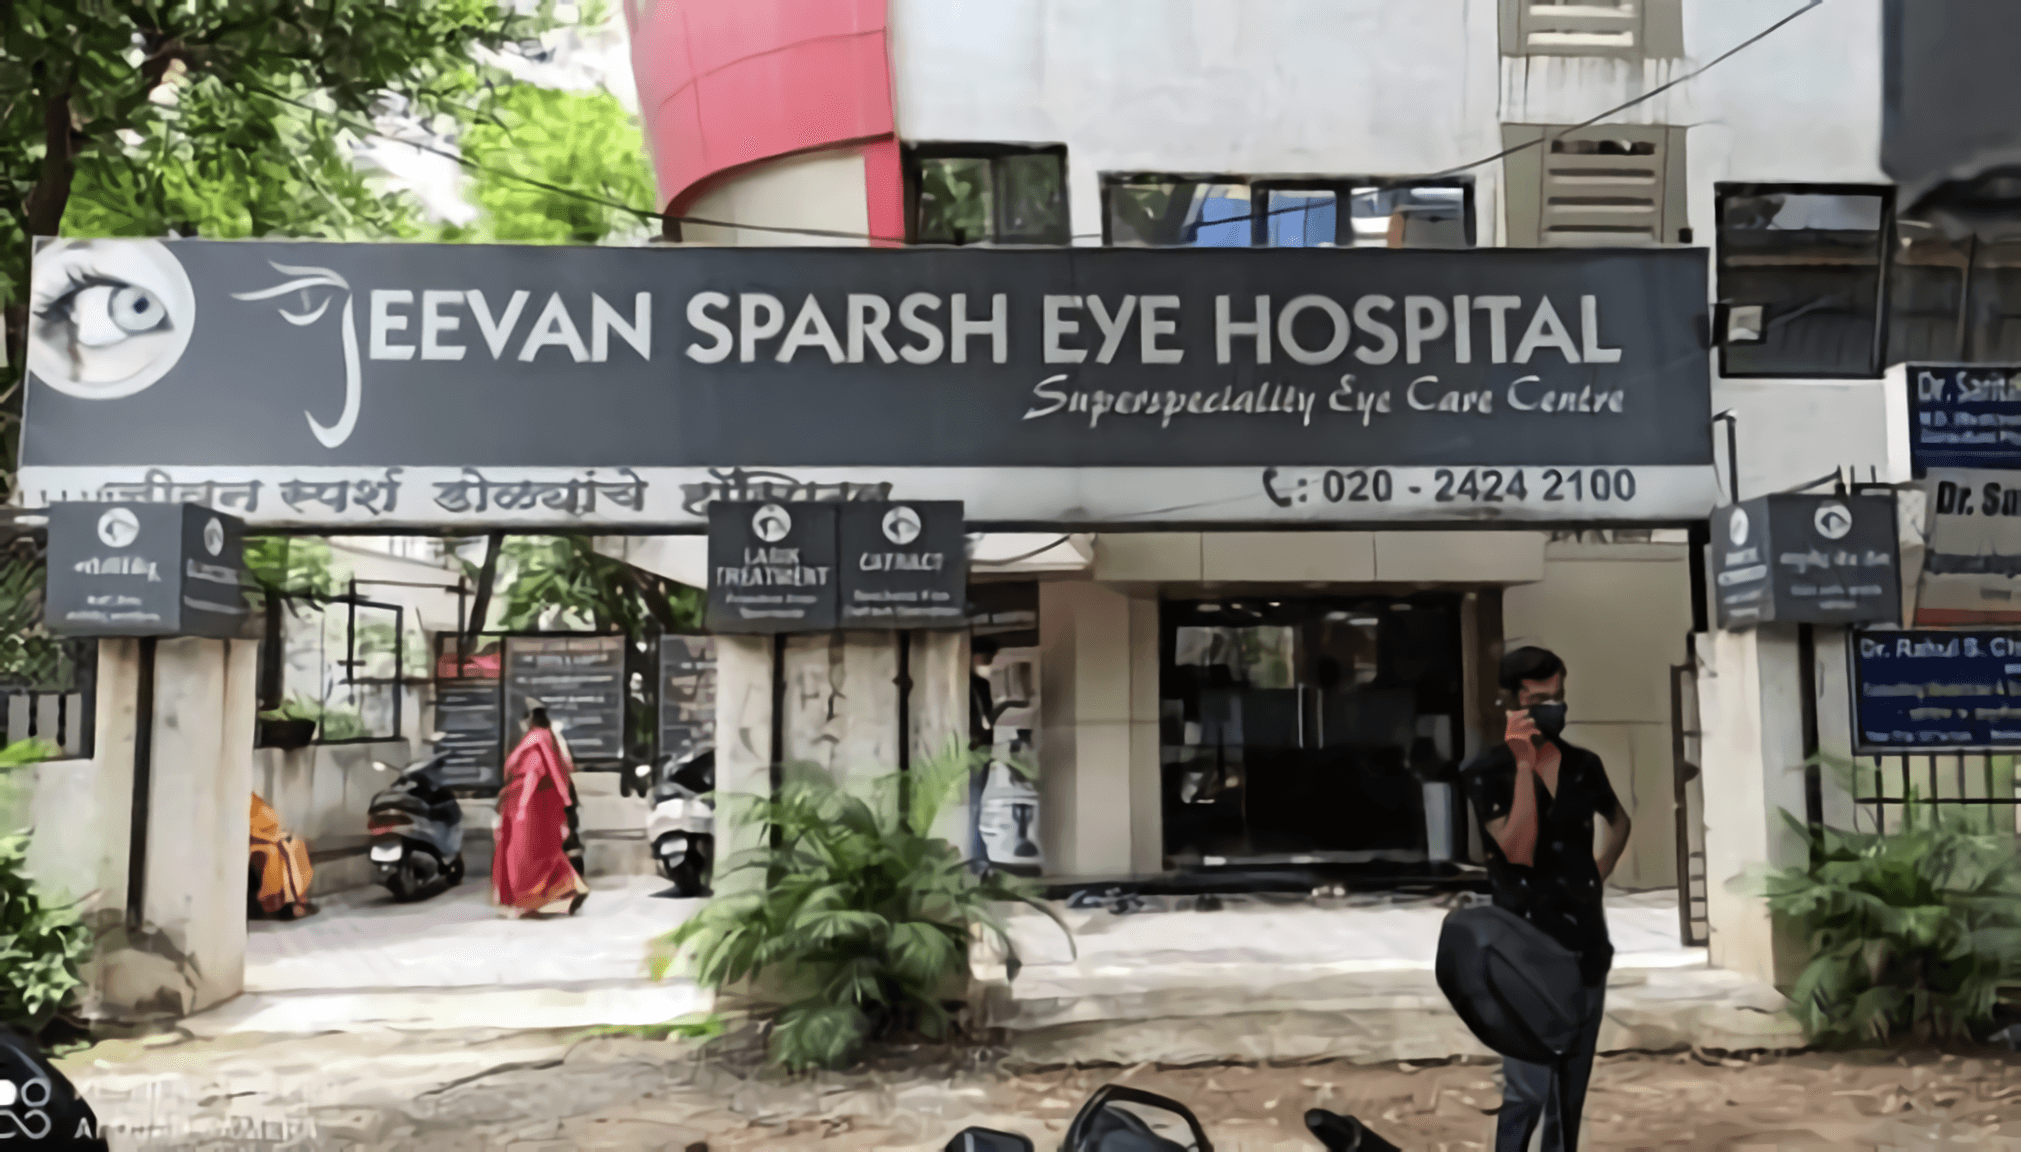 Jeevan Sparsh Eye Hospital